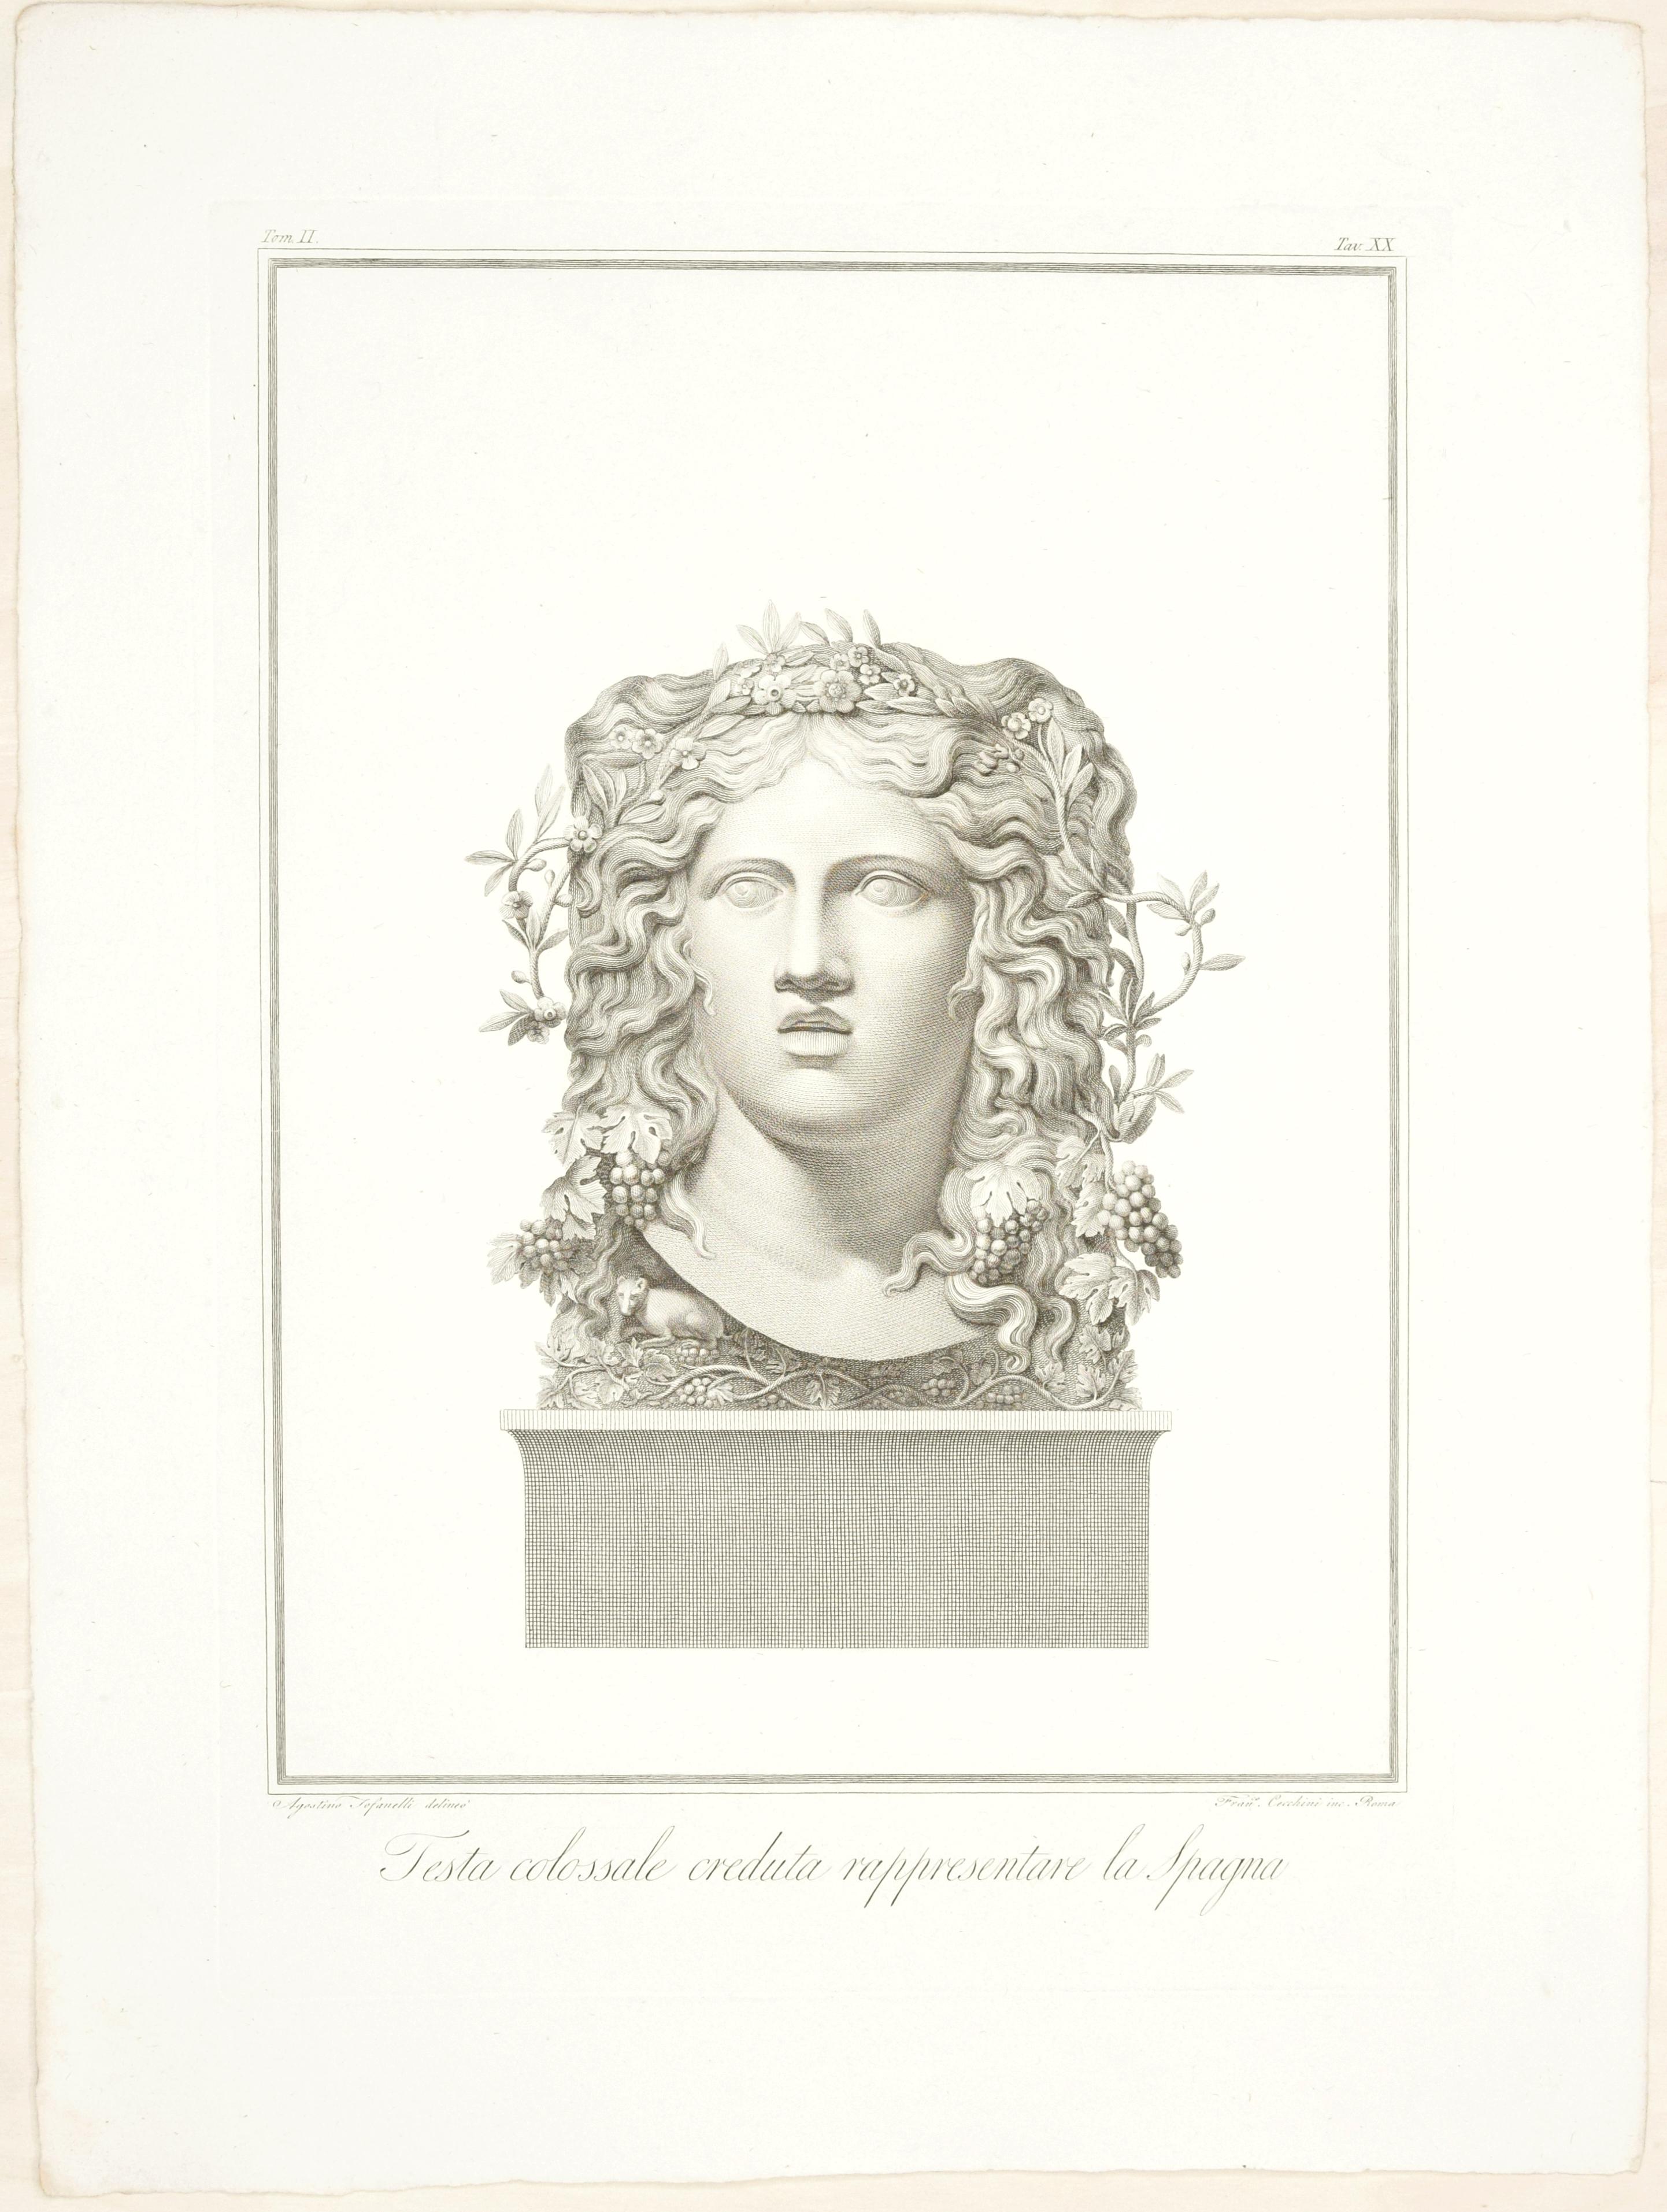 Figurative Print Francesco Cecchini - Testa Colossale Creduta Rappresentare la Spagna - Gravure de F. Cecchini